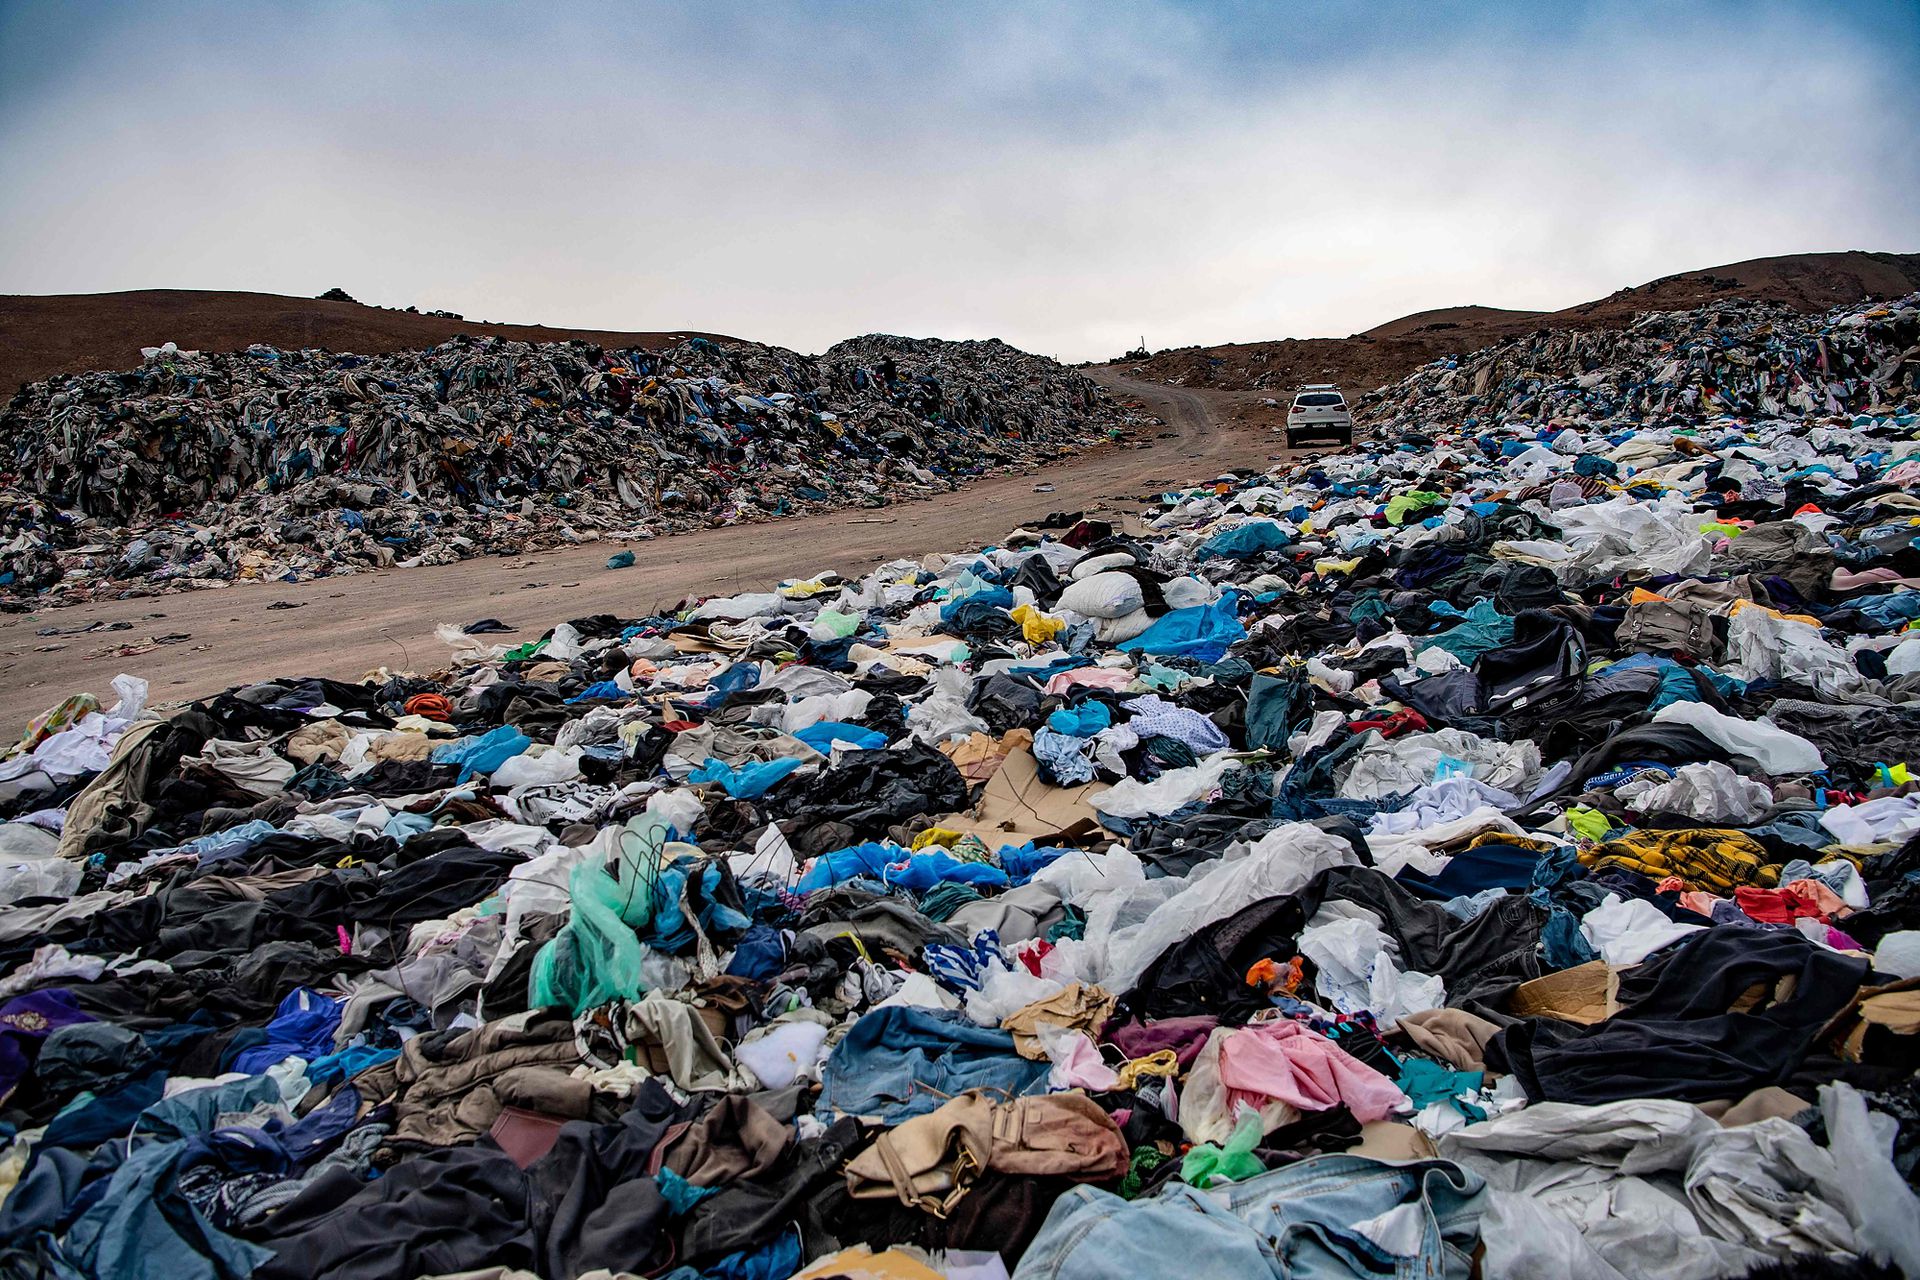 El cementerio, que ocupa varios metros en el desiero de Atacama. (Foto: AFP)